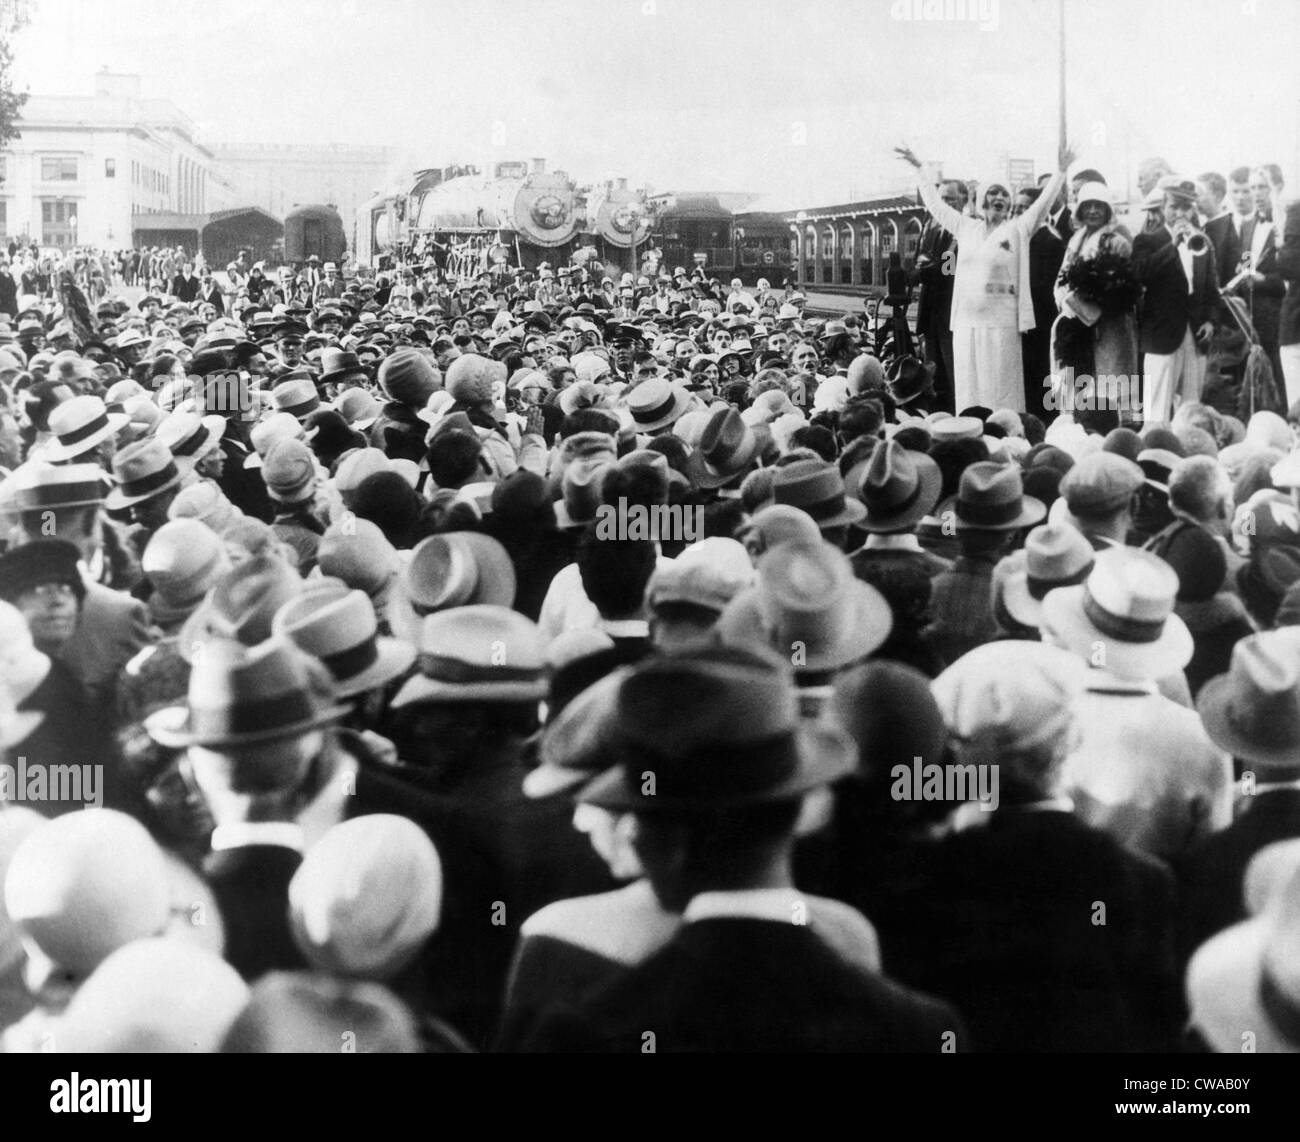 Evangelista Aimee Semple McPherson (estrema destra in piedi con le braccia sollevate), c. 1930.. La cortesia: CSU Archivi / Everett Collection Foto Stock